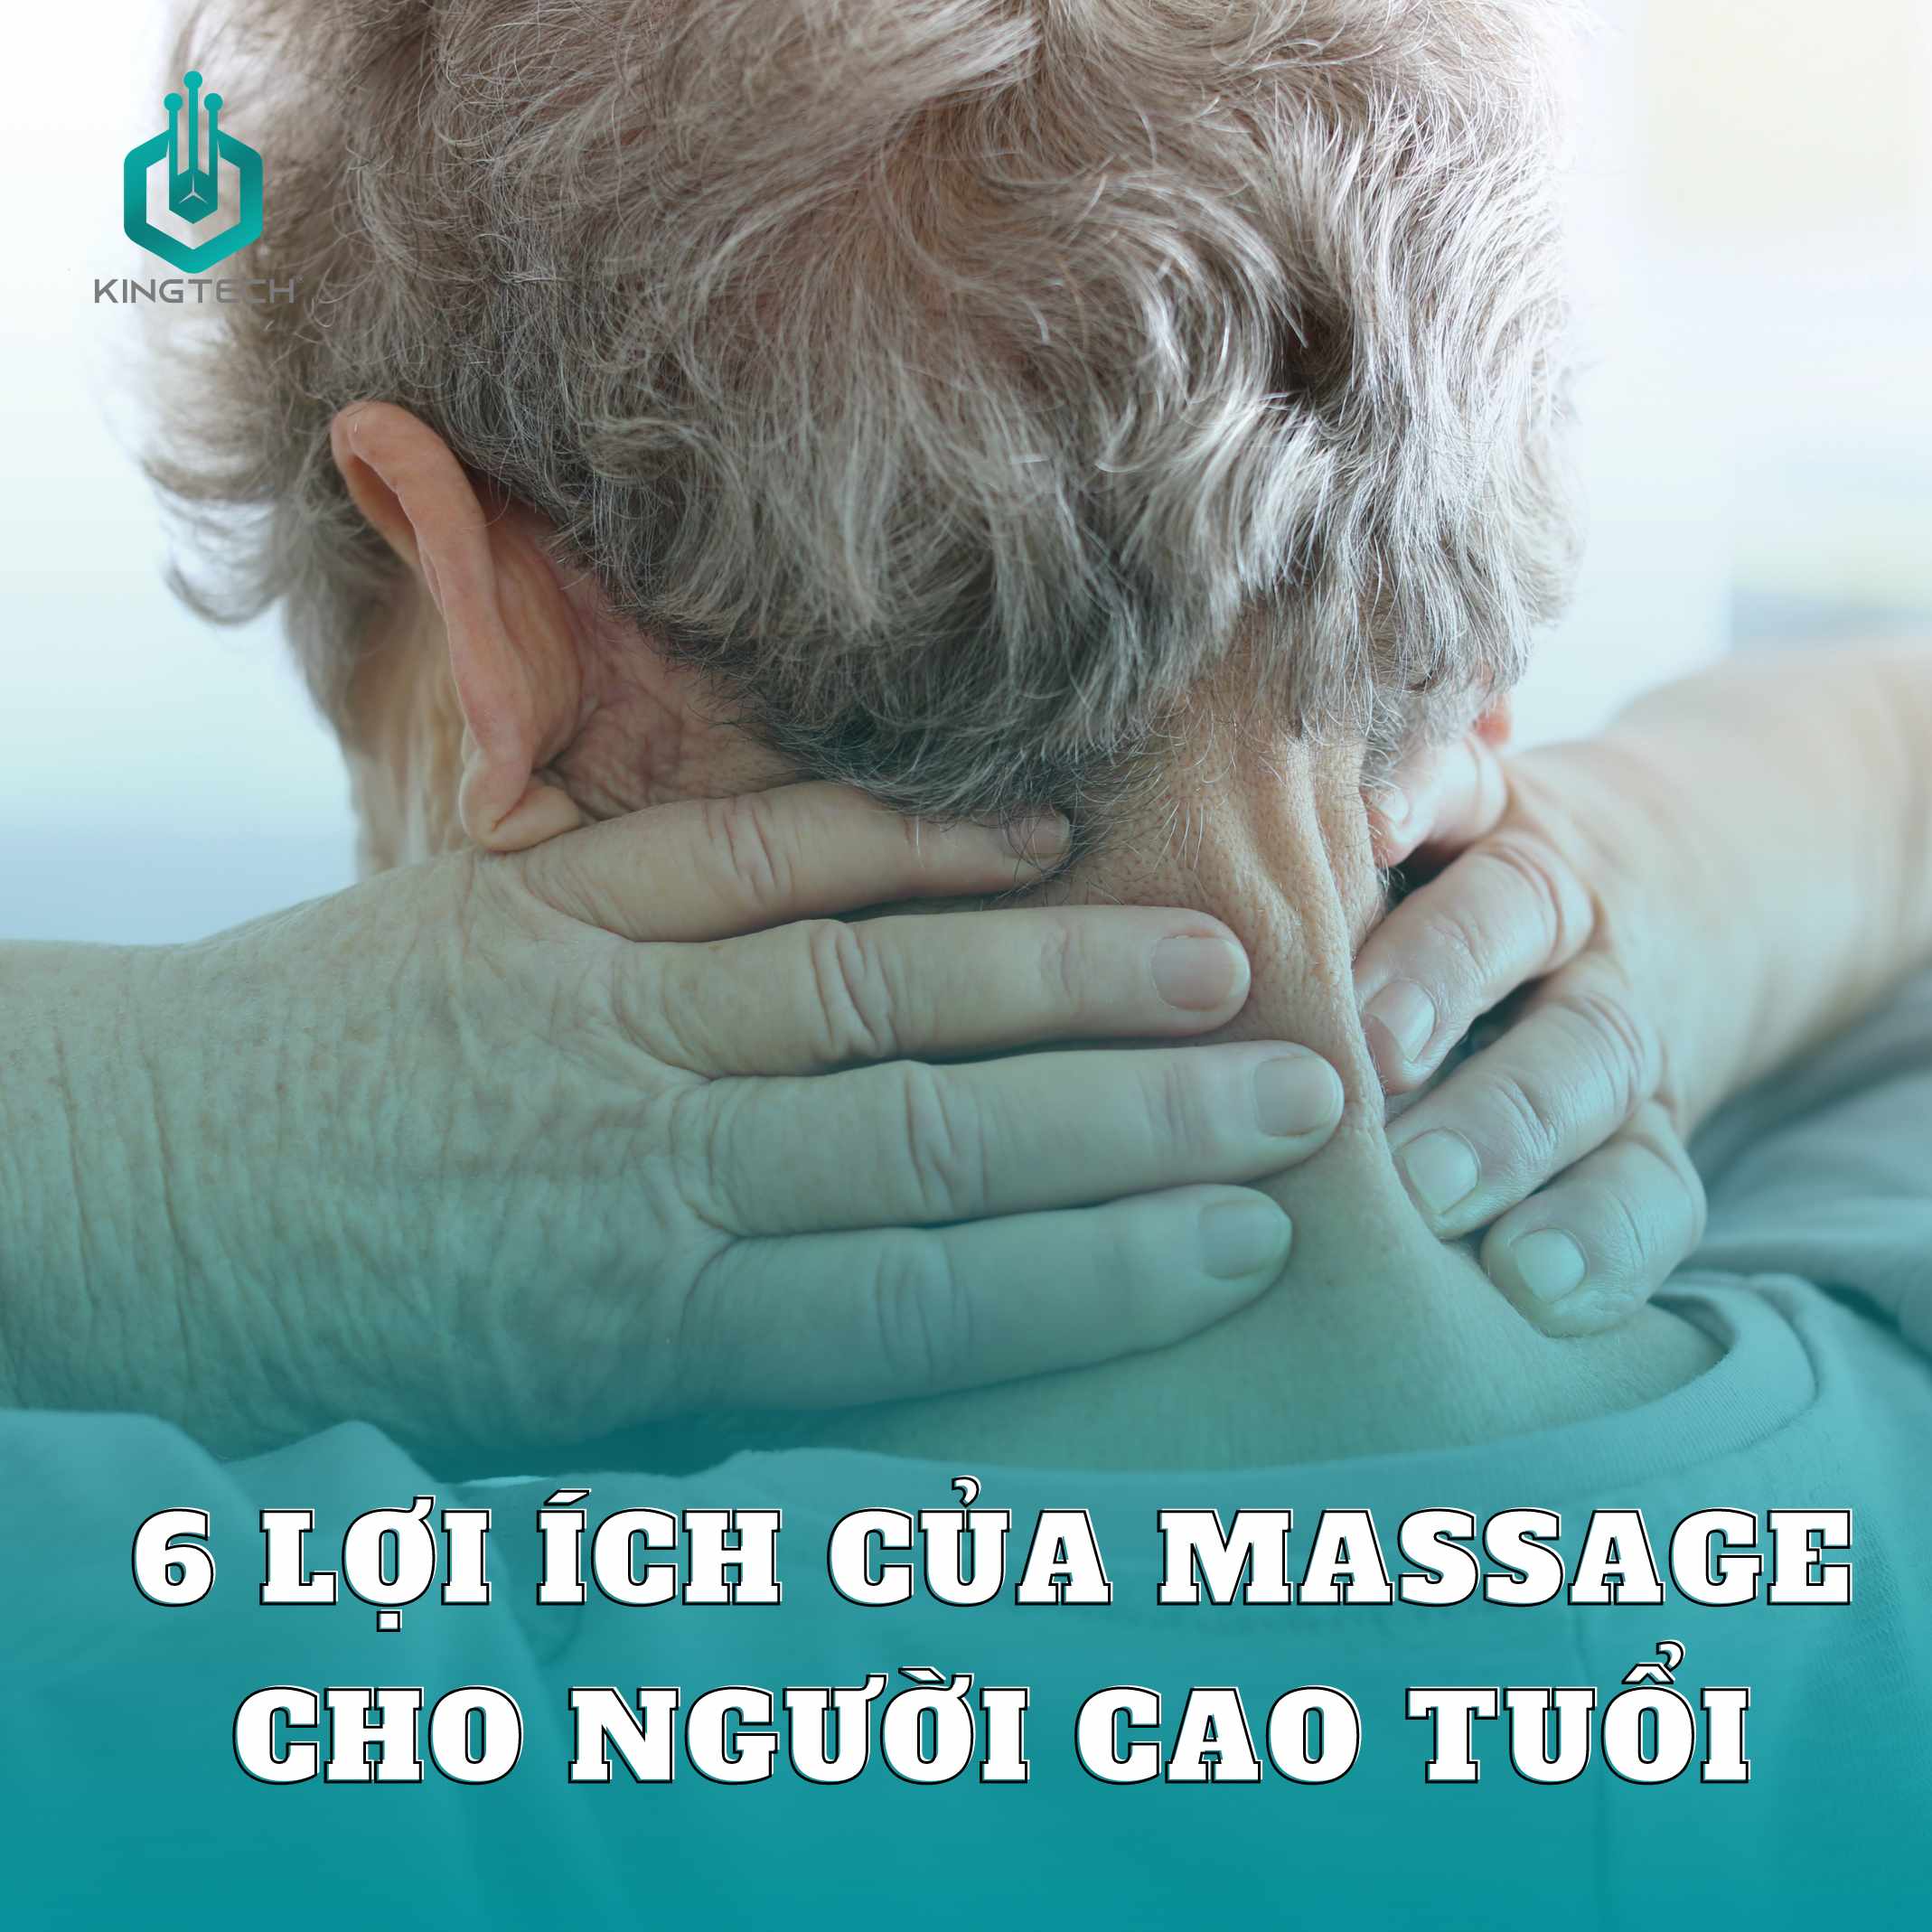 6 lợi ích của việc massage cho người cao tuổi